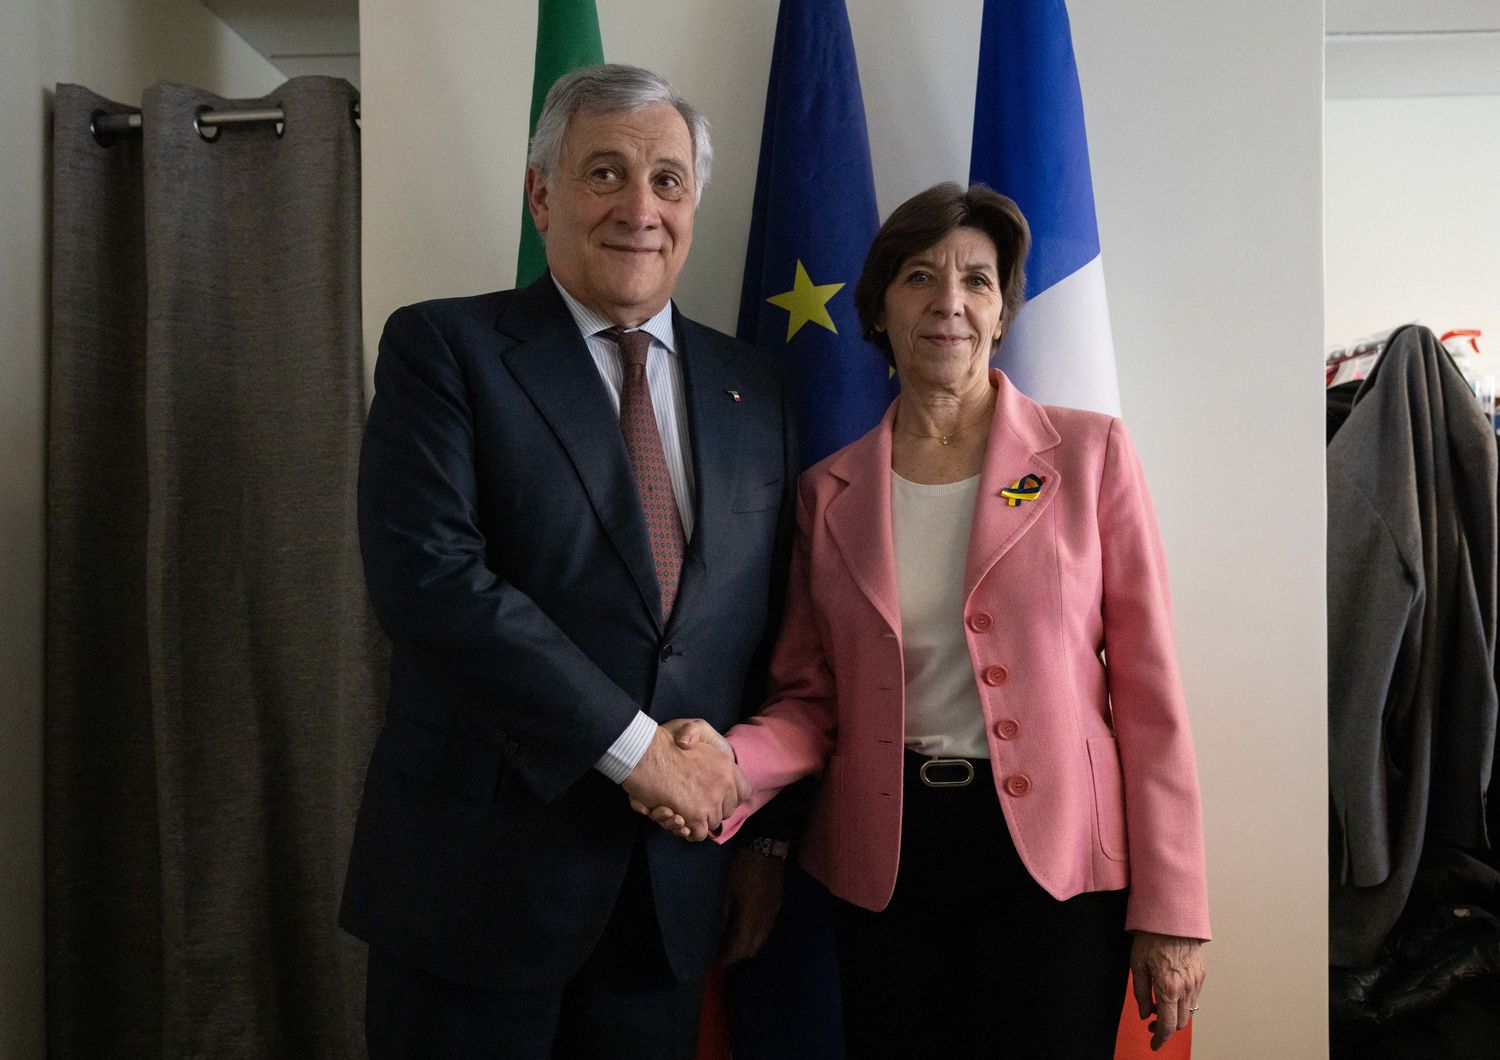 Il ministro degli Esteri Tajani e l'omologa francese Colonna in un incontro all'Onu a New York